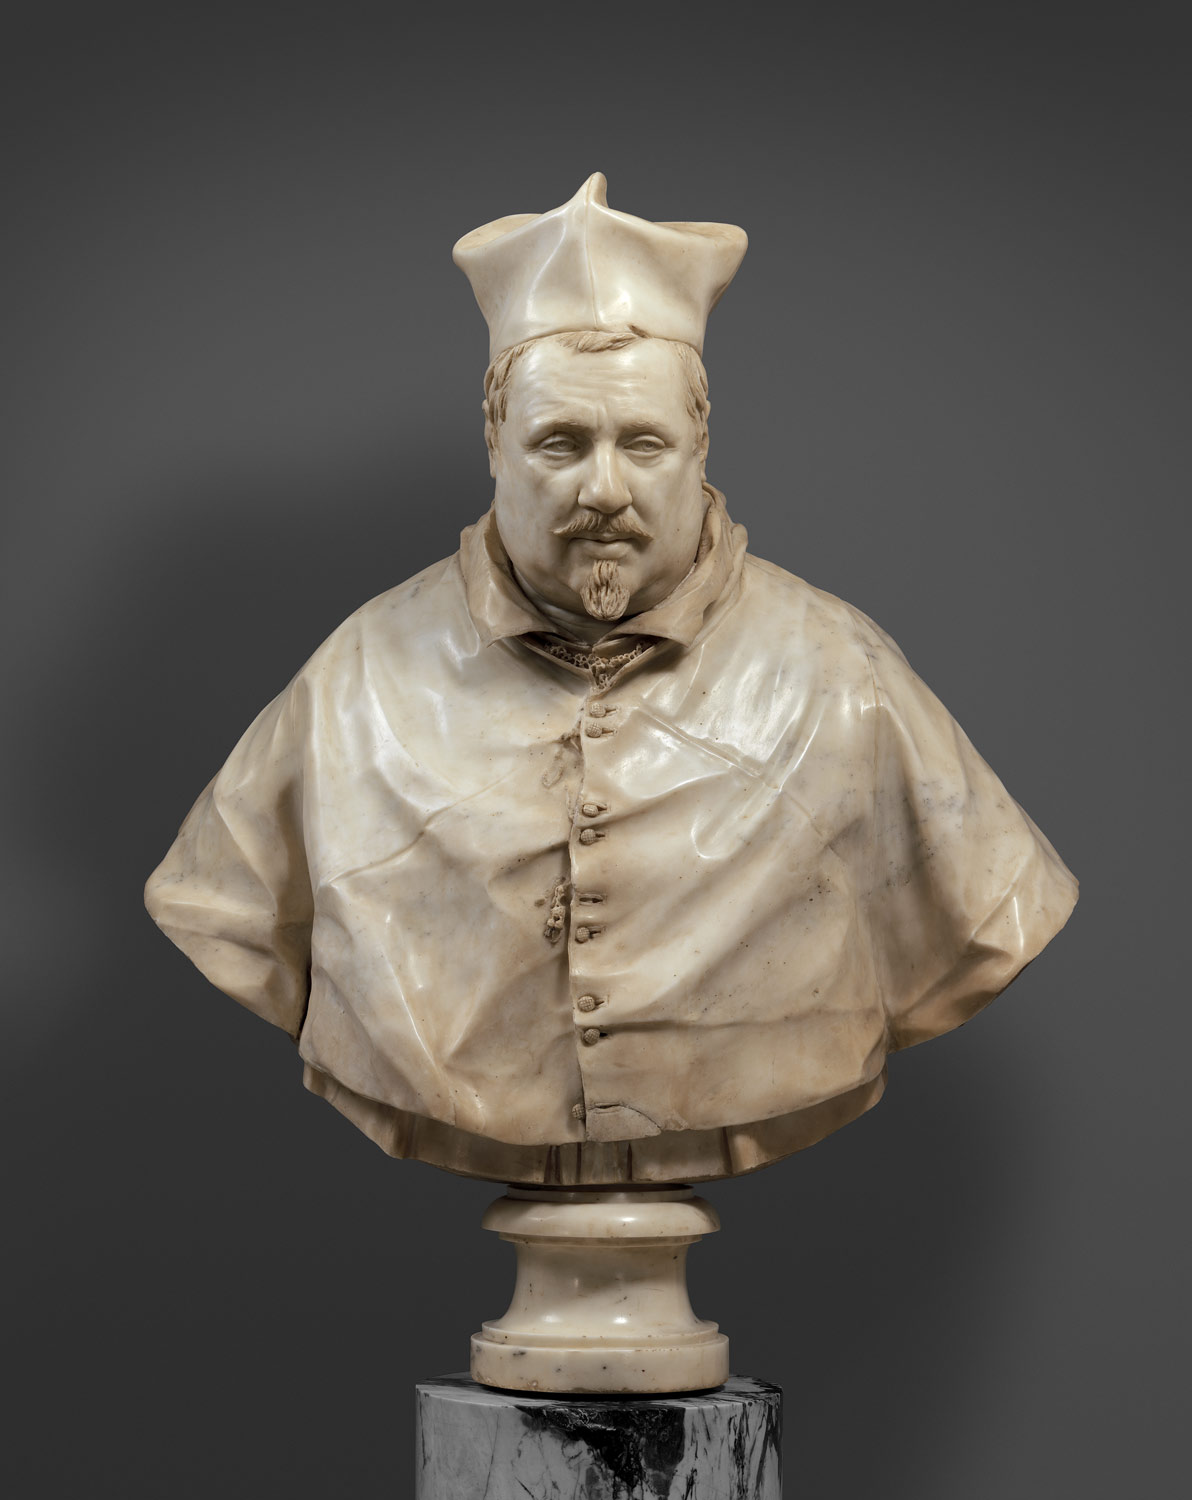 Cardinal Scipione Borghese (1577–1633)